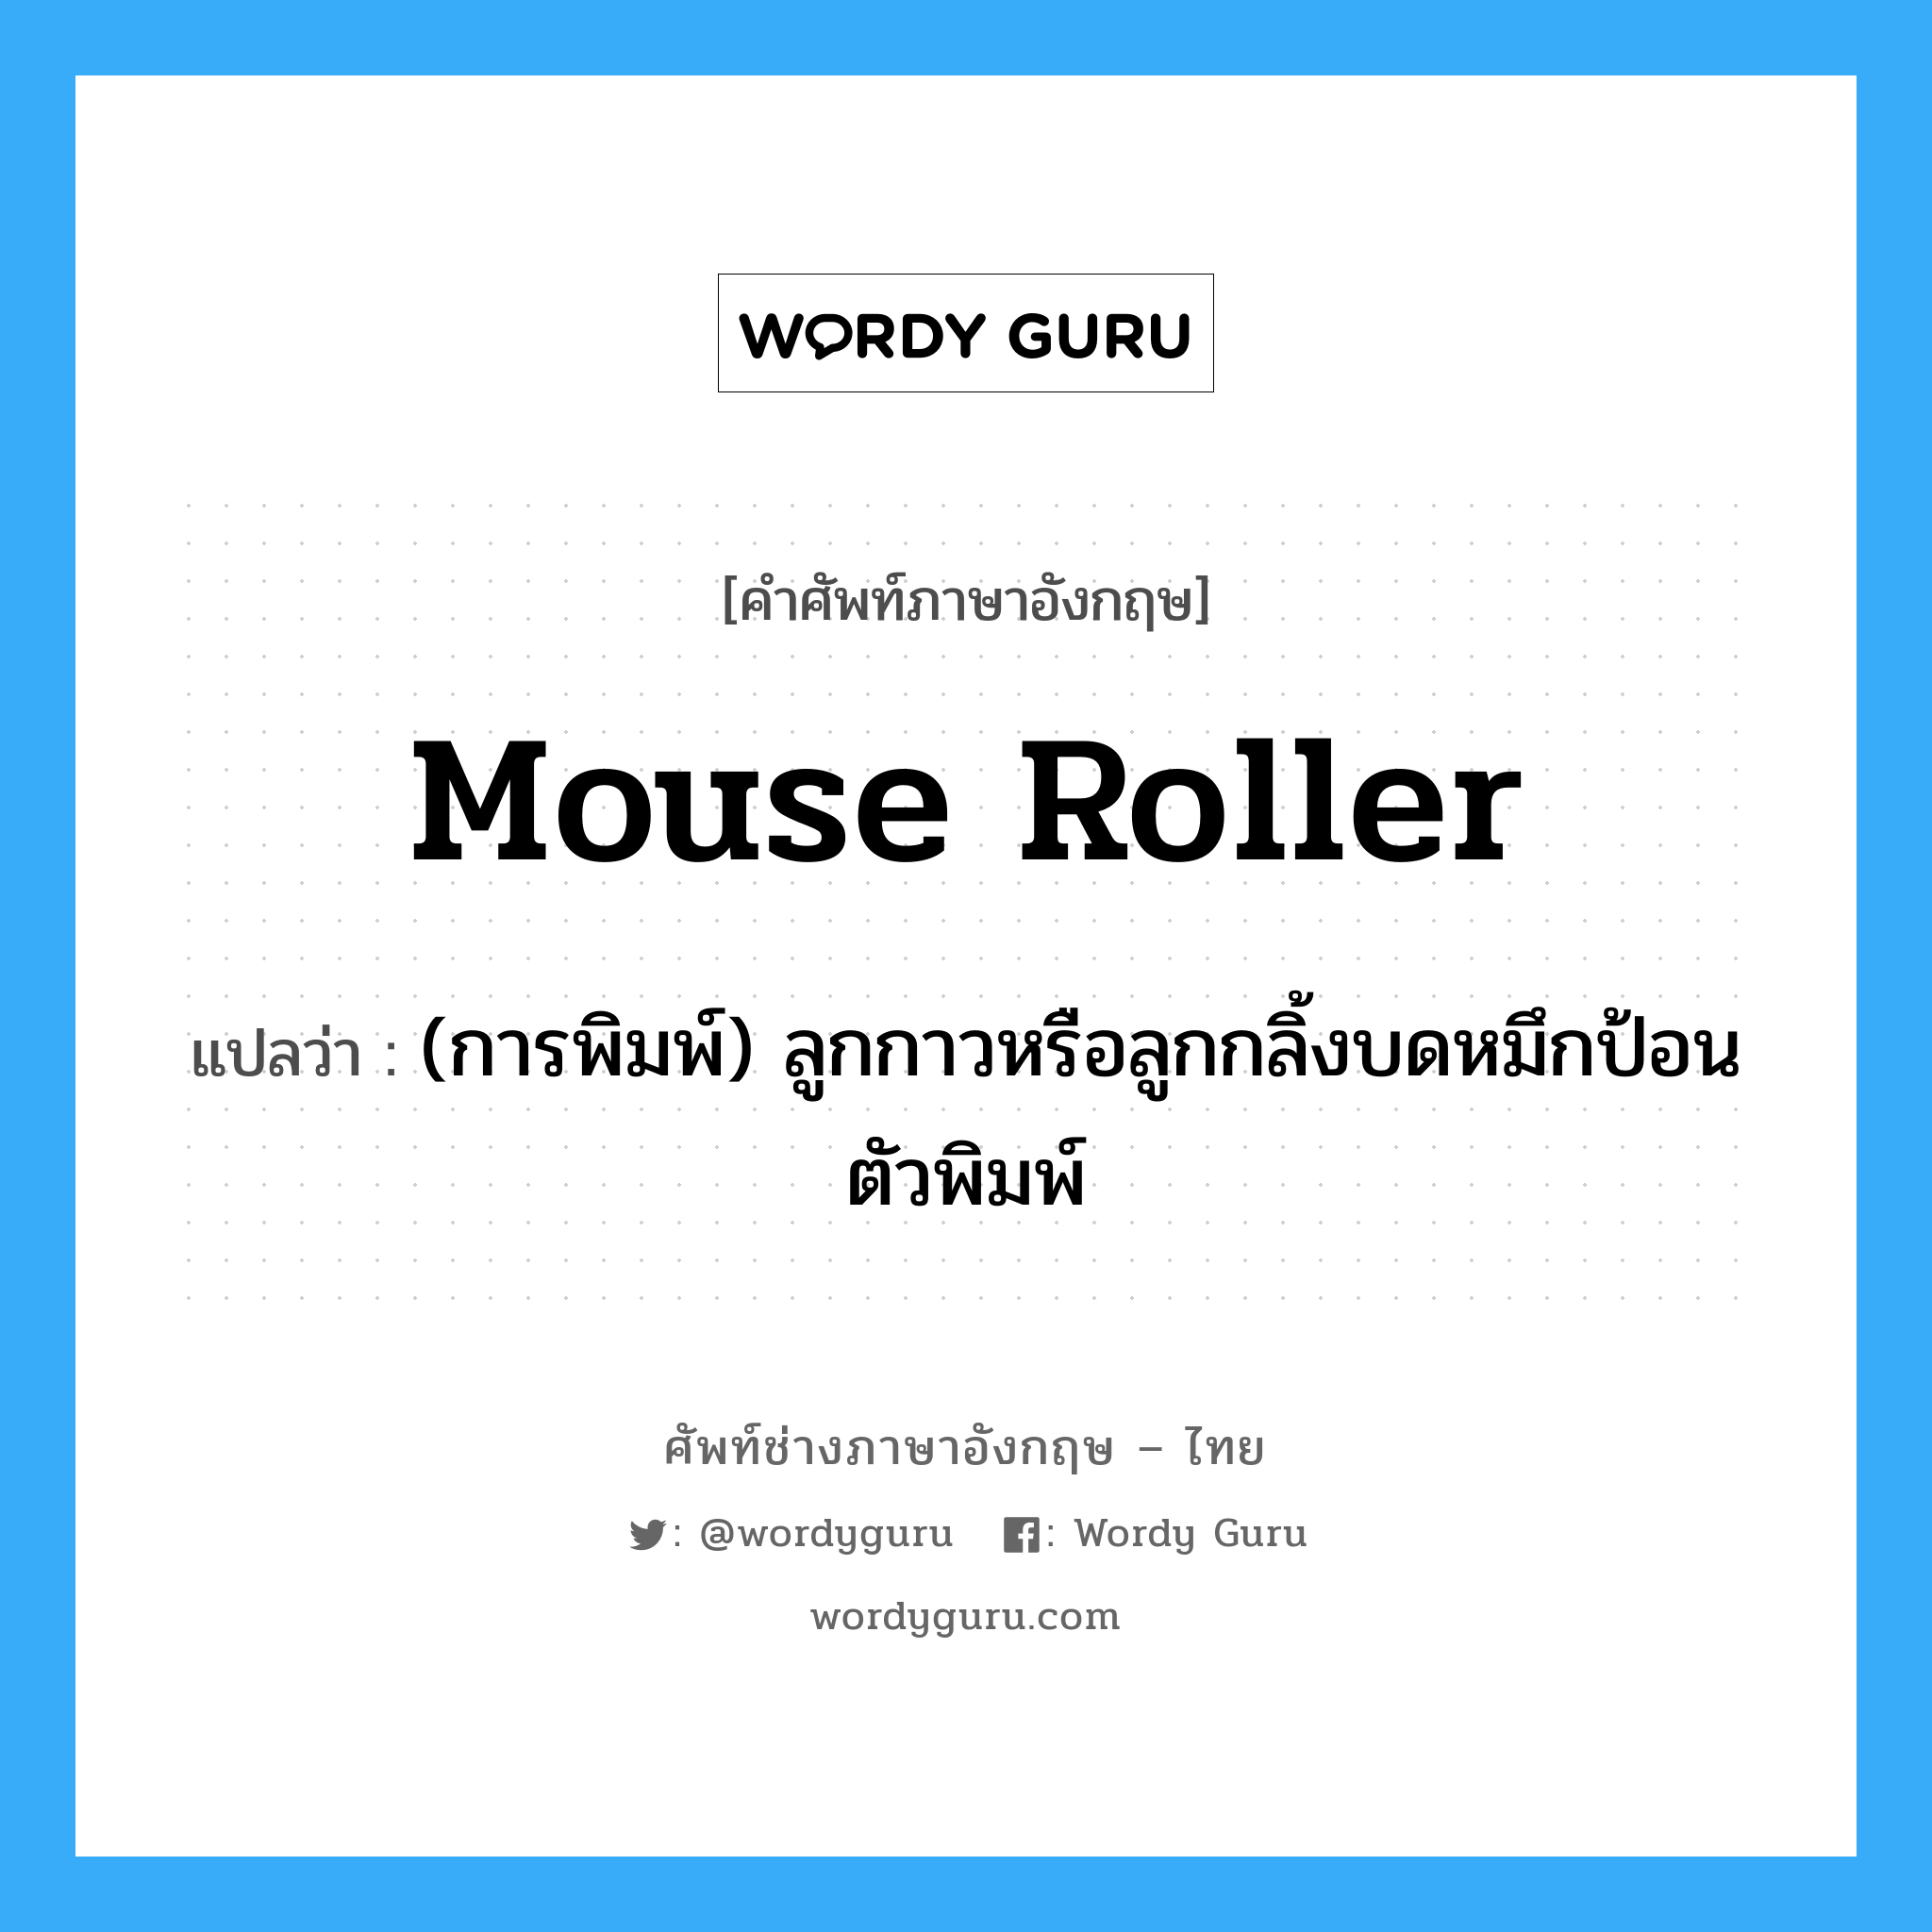 mouse roller แปลว่า?, คำศัพท์ช่างภาษาอังกฤษ - ไทย mouse roller คำศัพท์ภาษาอังกฤษ mouse roller แปลว่า (การพิมพ์) ลูกกาวหรือลูกกลิ้งบดหมึกป้อนตัวพิมพ์